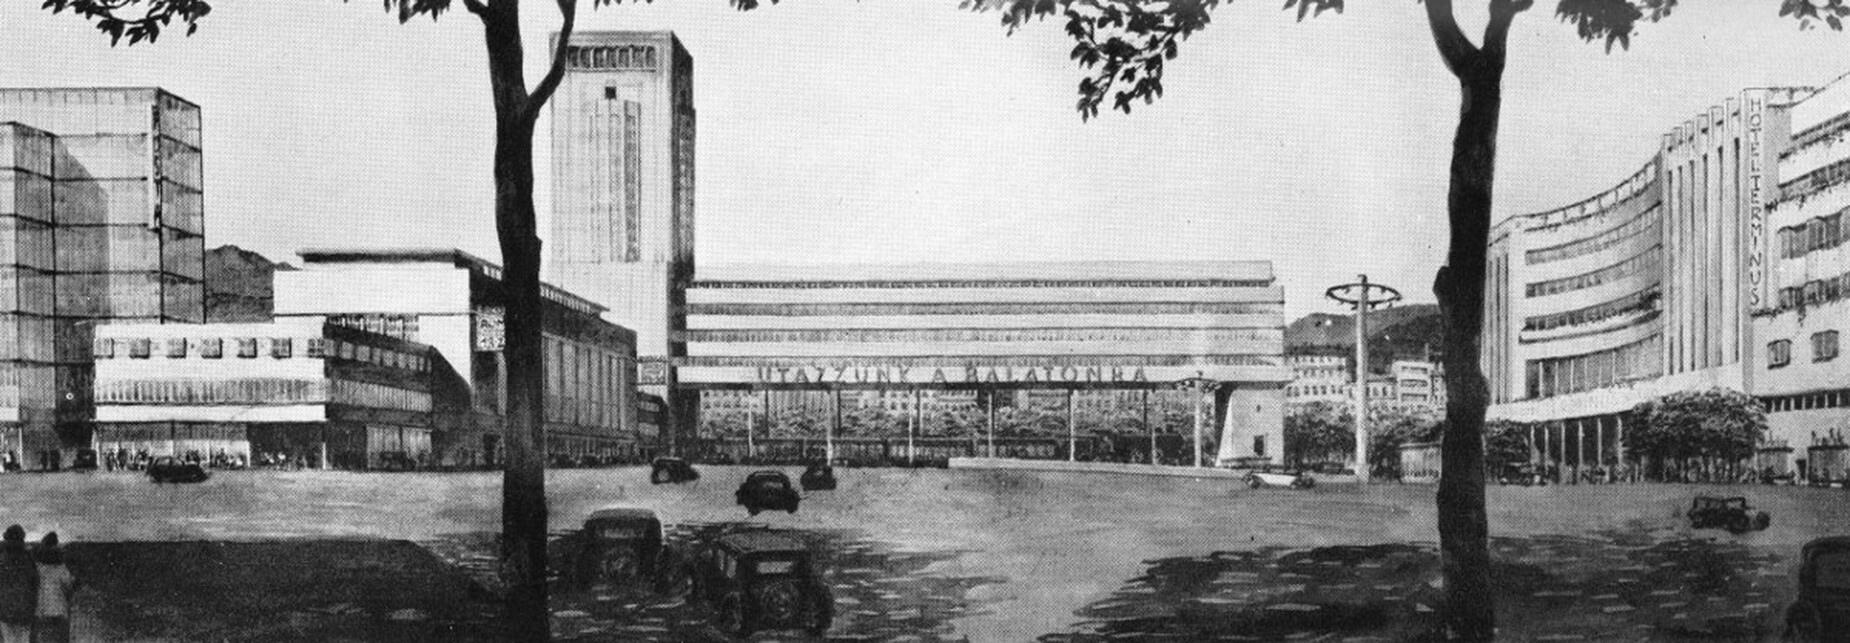 A Déli pályaudvar, Vágó József elképzelései szerint (Forrás: Vágó József: Budapest művészi újjáépítése, 1936)  